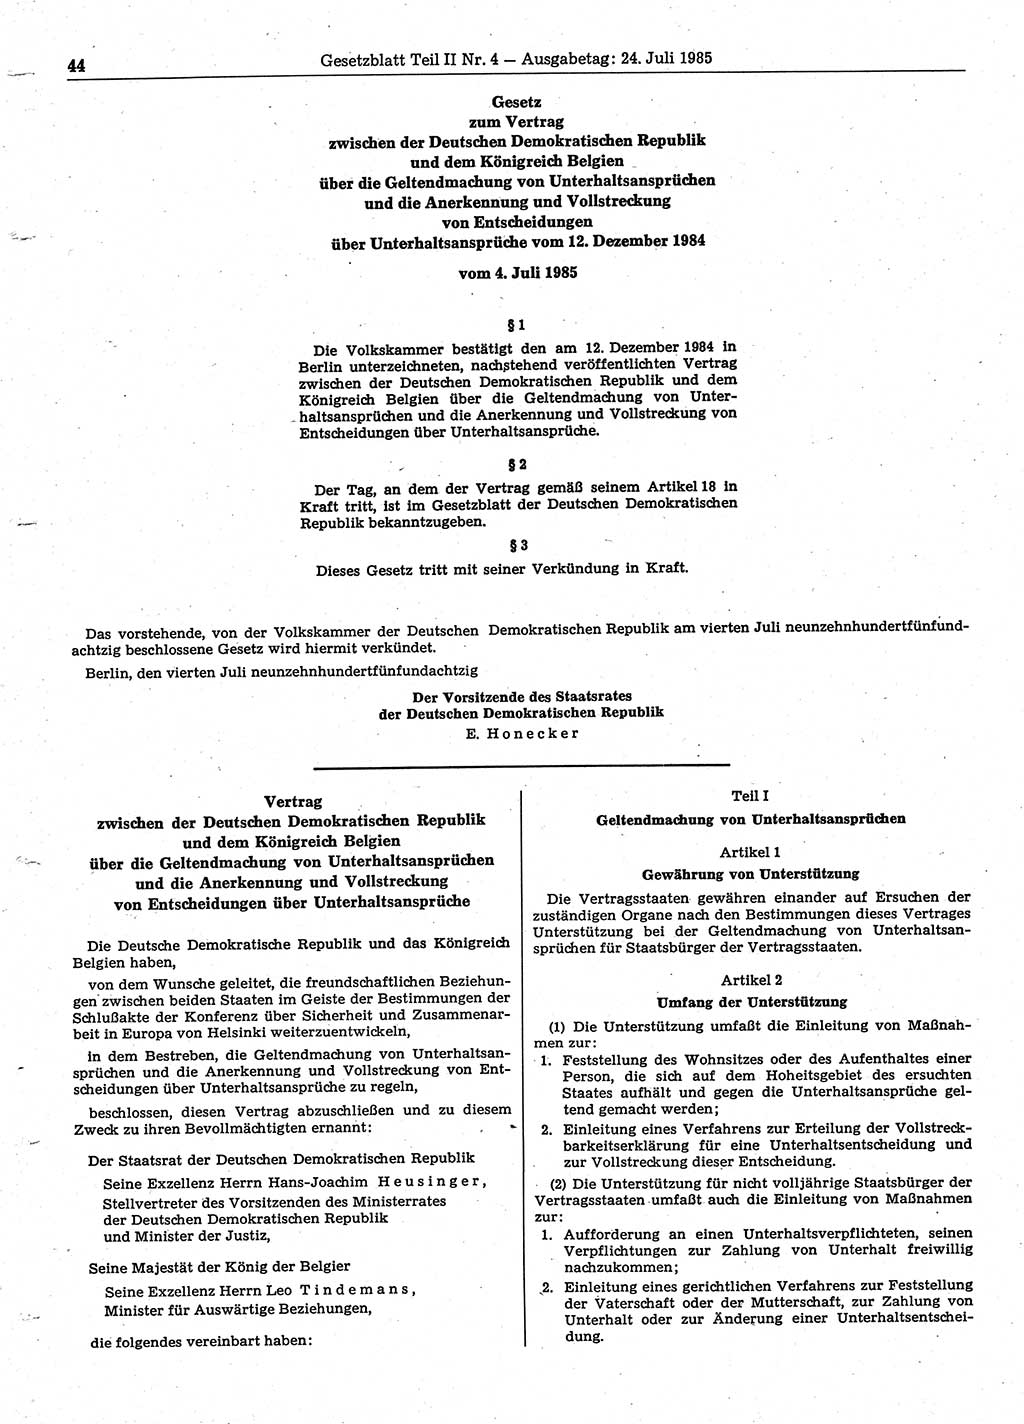 Gesetzblatt (GBl.) der Deutschen Demokratischen Republik (DDR) Teil ⅠⅠ 1985, Seite 44 (GBl. DDR ⅠⅠ 1985, S. 44)